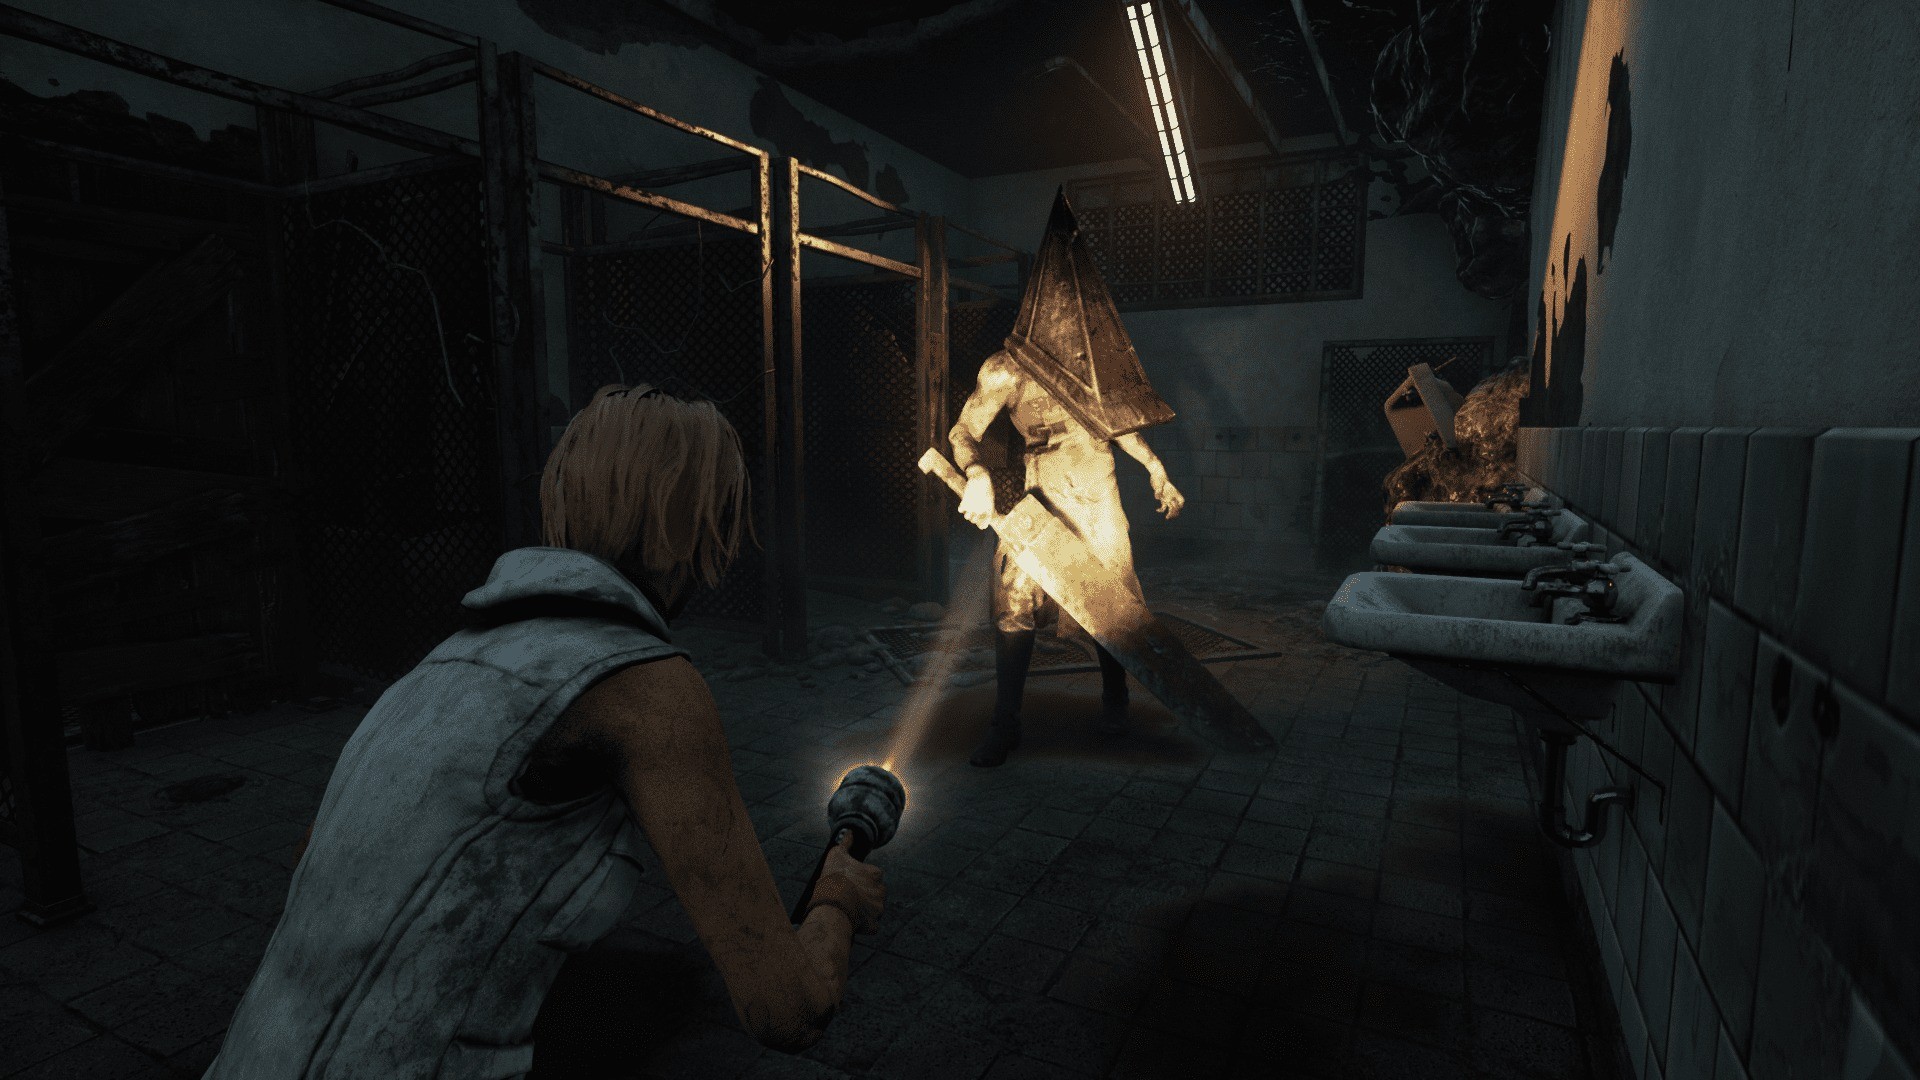 Silent Hill 2 Remake vai sair para PC e Xbox? Veja 5 dúvidas sobre